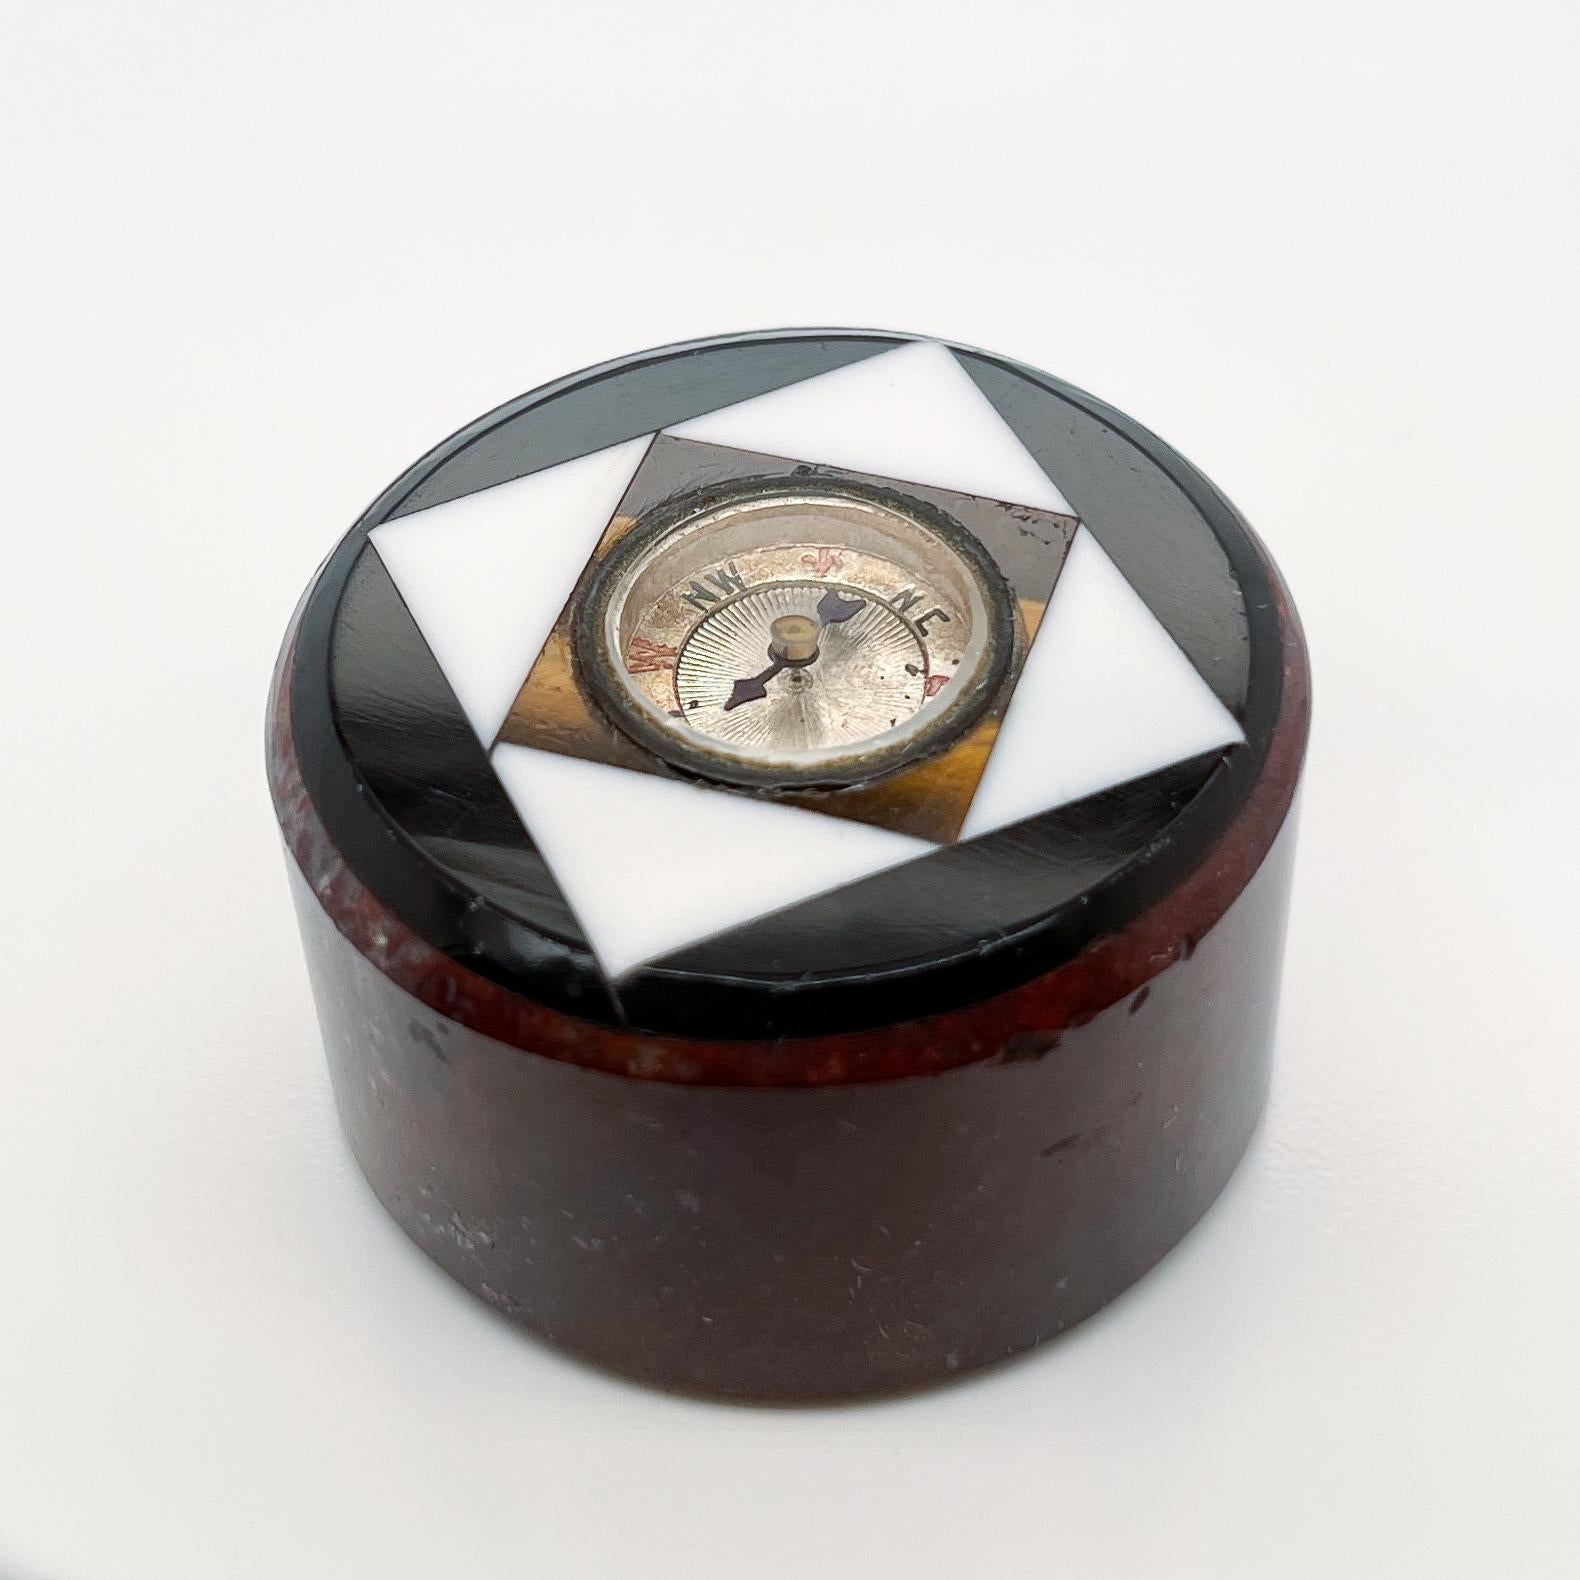 Eine feine Miniatur antiken Kompass.

Eingefasst in eine Matrix aus Edelsteinen und Hartsteinen.

Zu den Steinen gehören Tigerauge, weißer und schwarzer Onyx und ein roter Jaspis oder Marmorsockel.

Einfach ein wunderbares Stück Wunderkammer oder